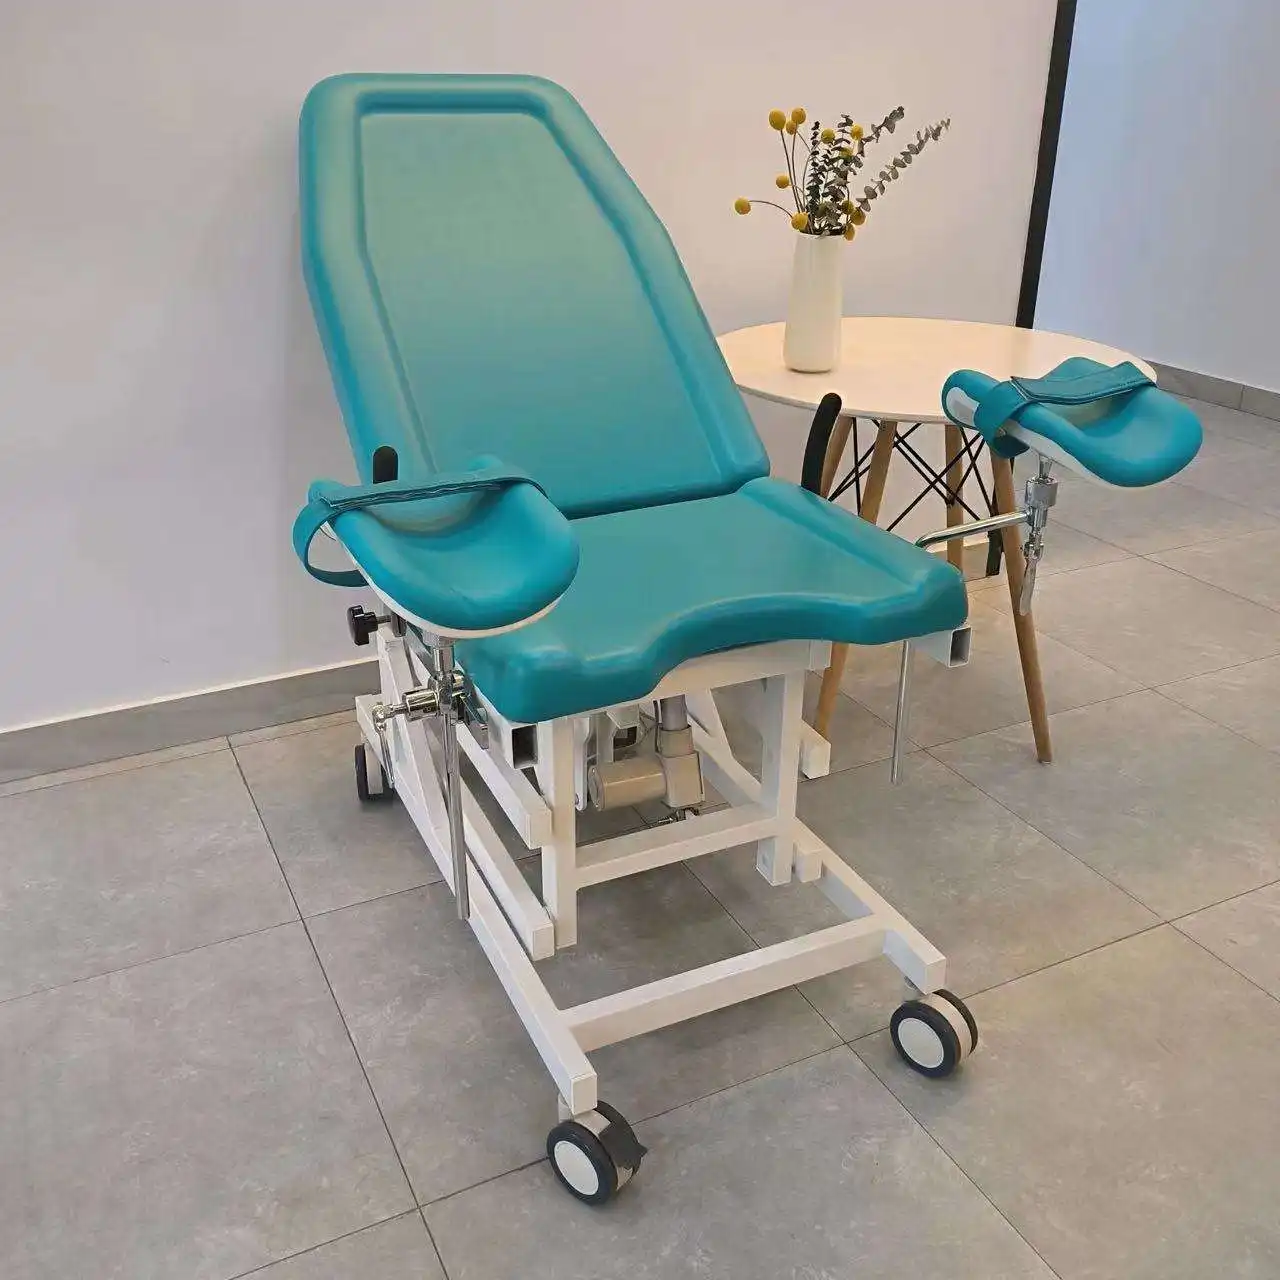 Lit d'accouchement de chaise gynécologique électrique lit de table d'examen obstétrique vert réglable médical d'hôpital